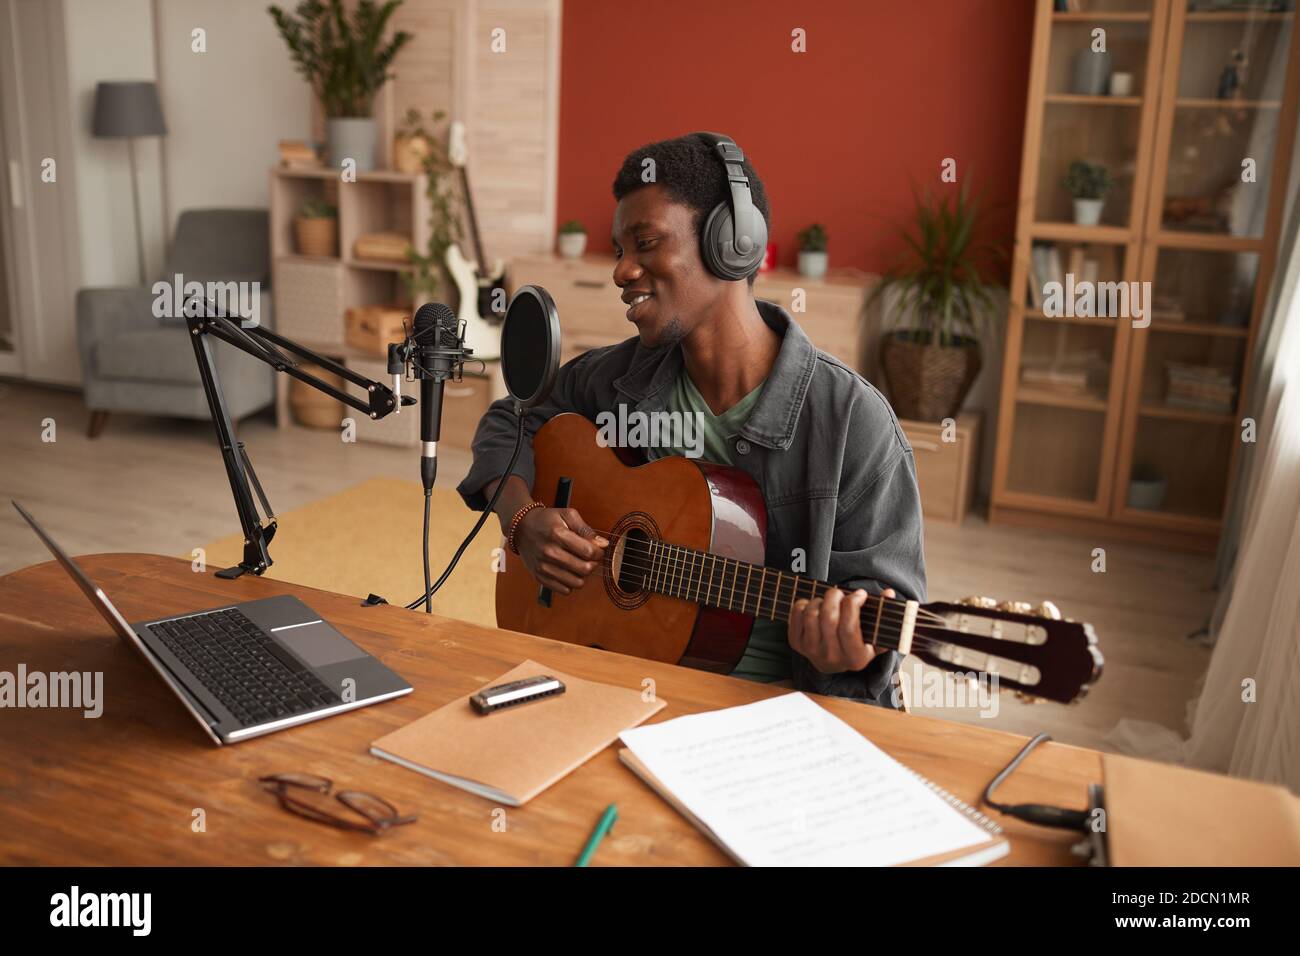 Retrato de un hombre afroamericano sonriente cantando al micrófono y tocando la guitarra mientras grababa música en el estudio, espacio de copiado Foto de stock